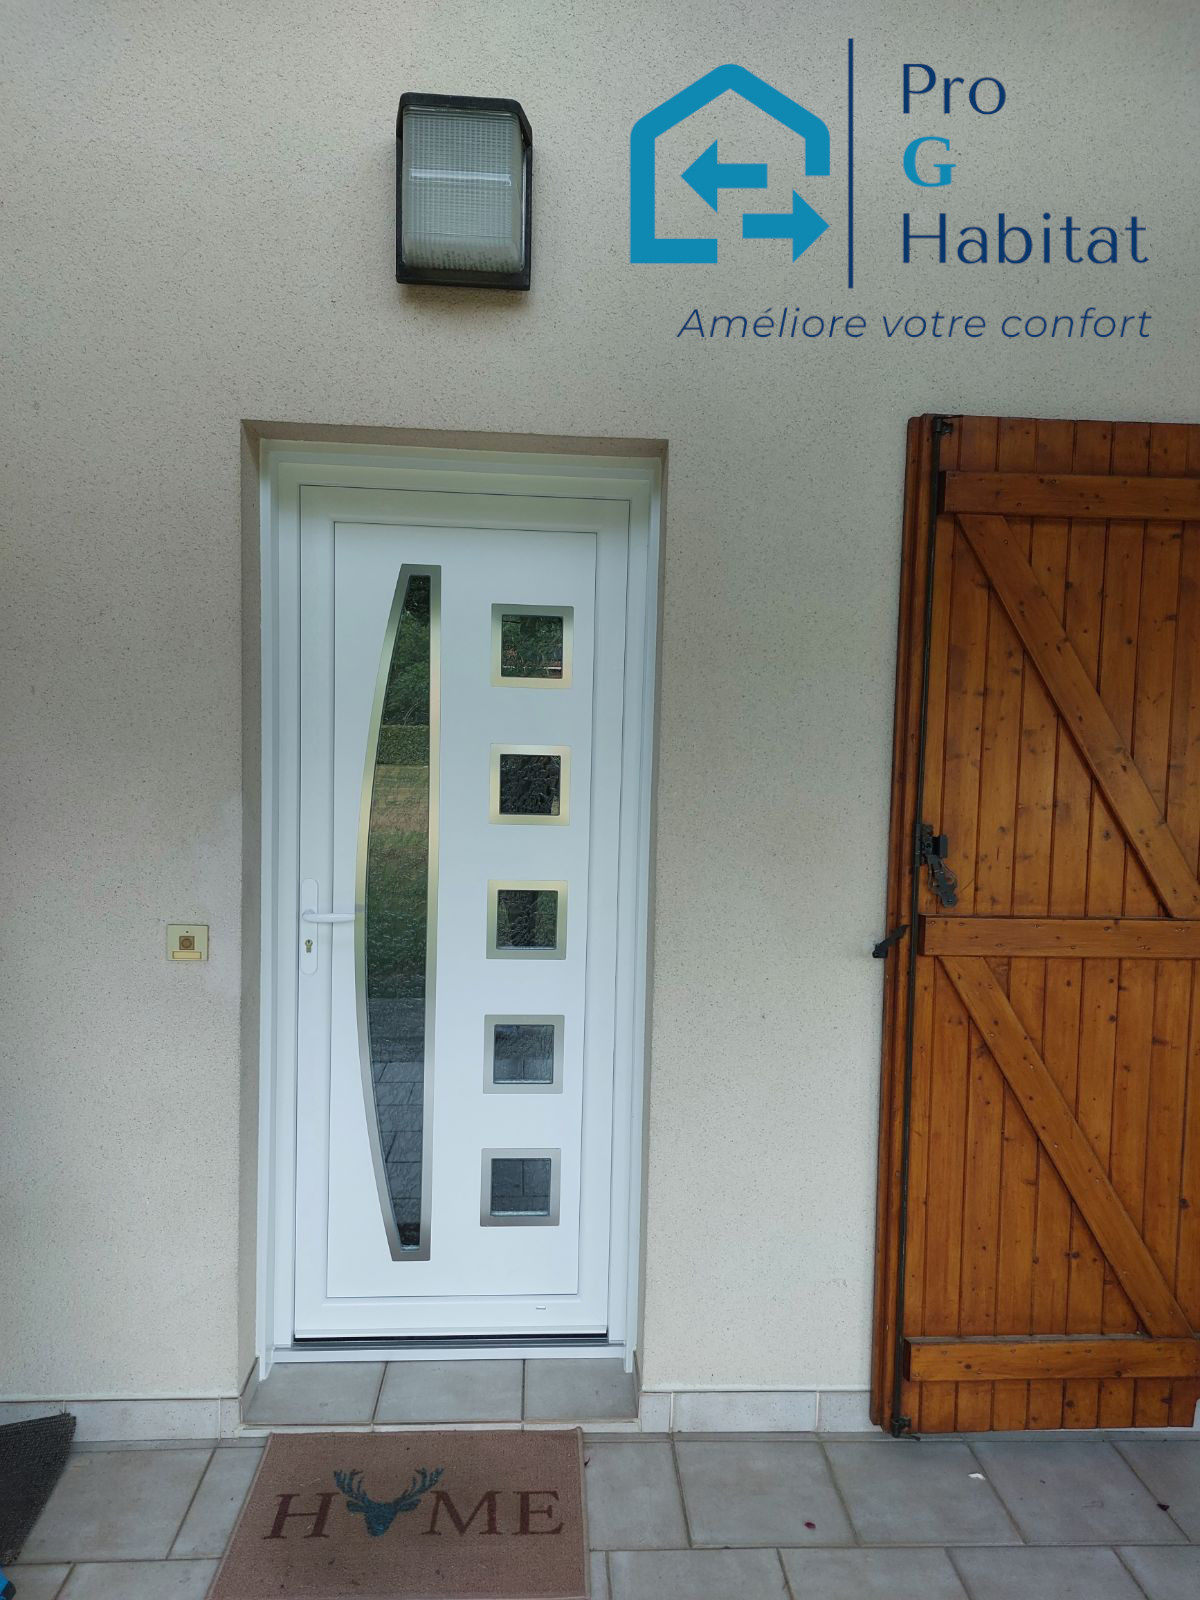 Porte entrée - Pro G Habitat